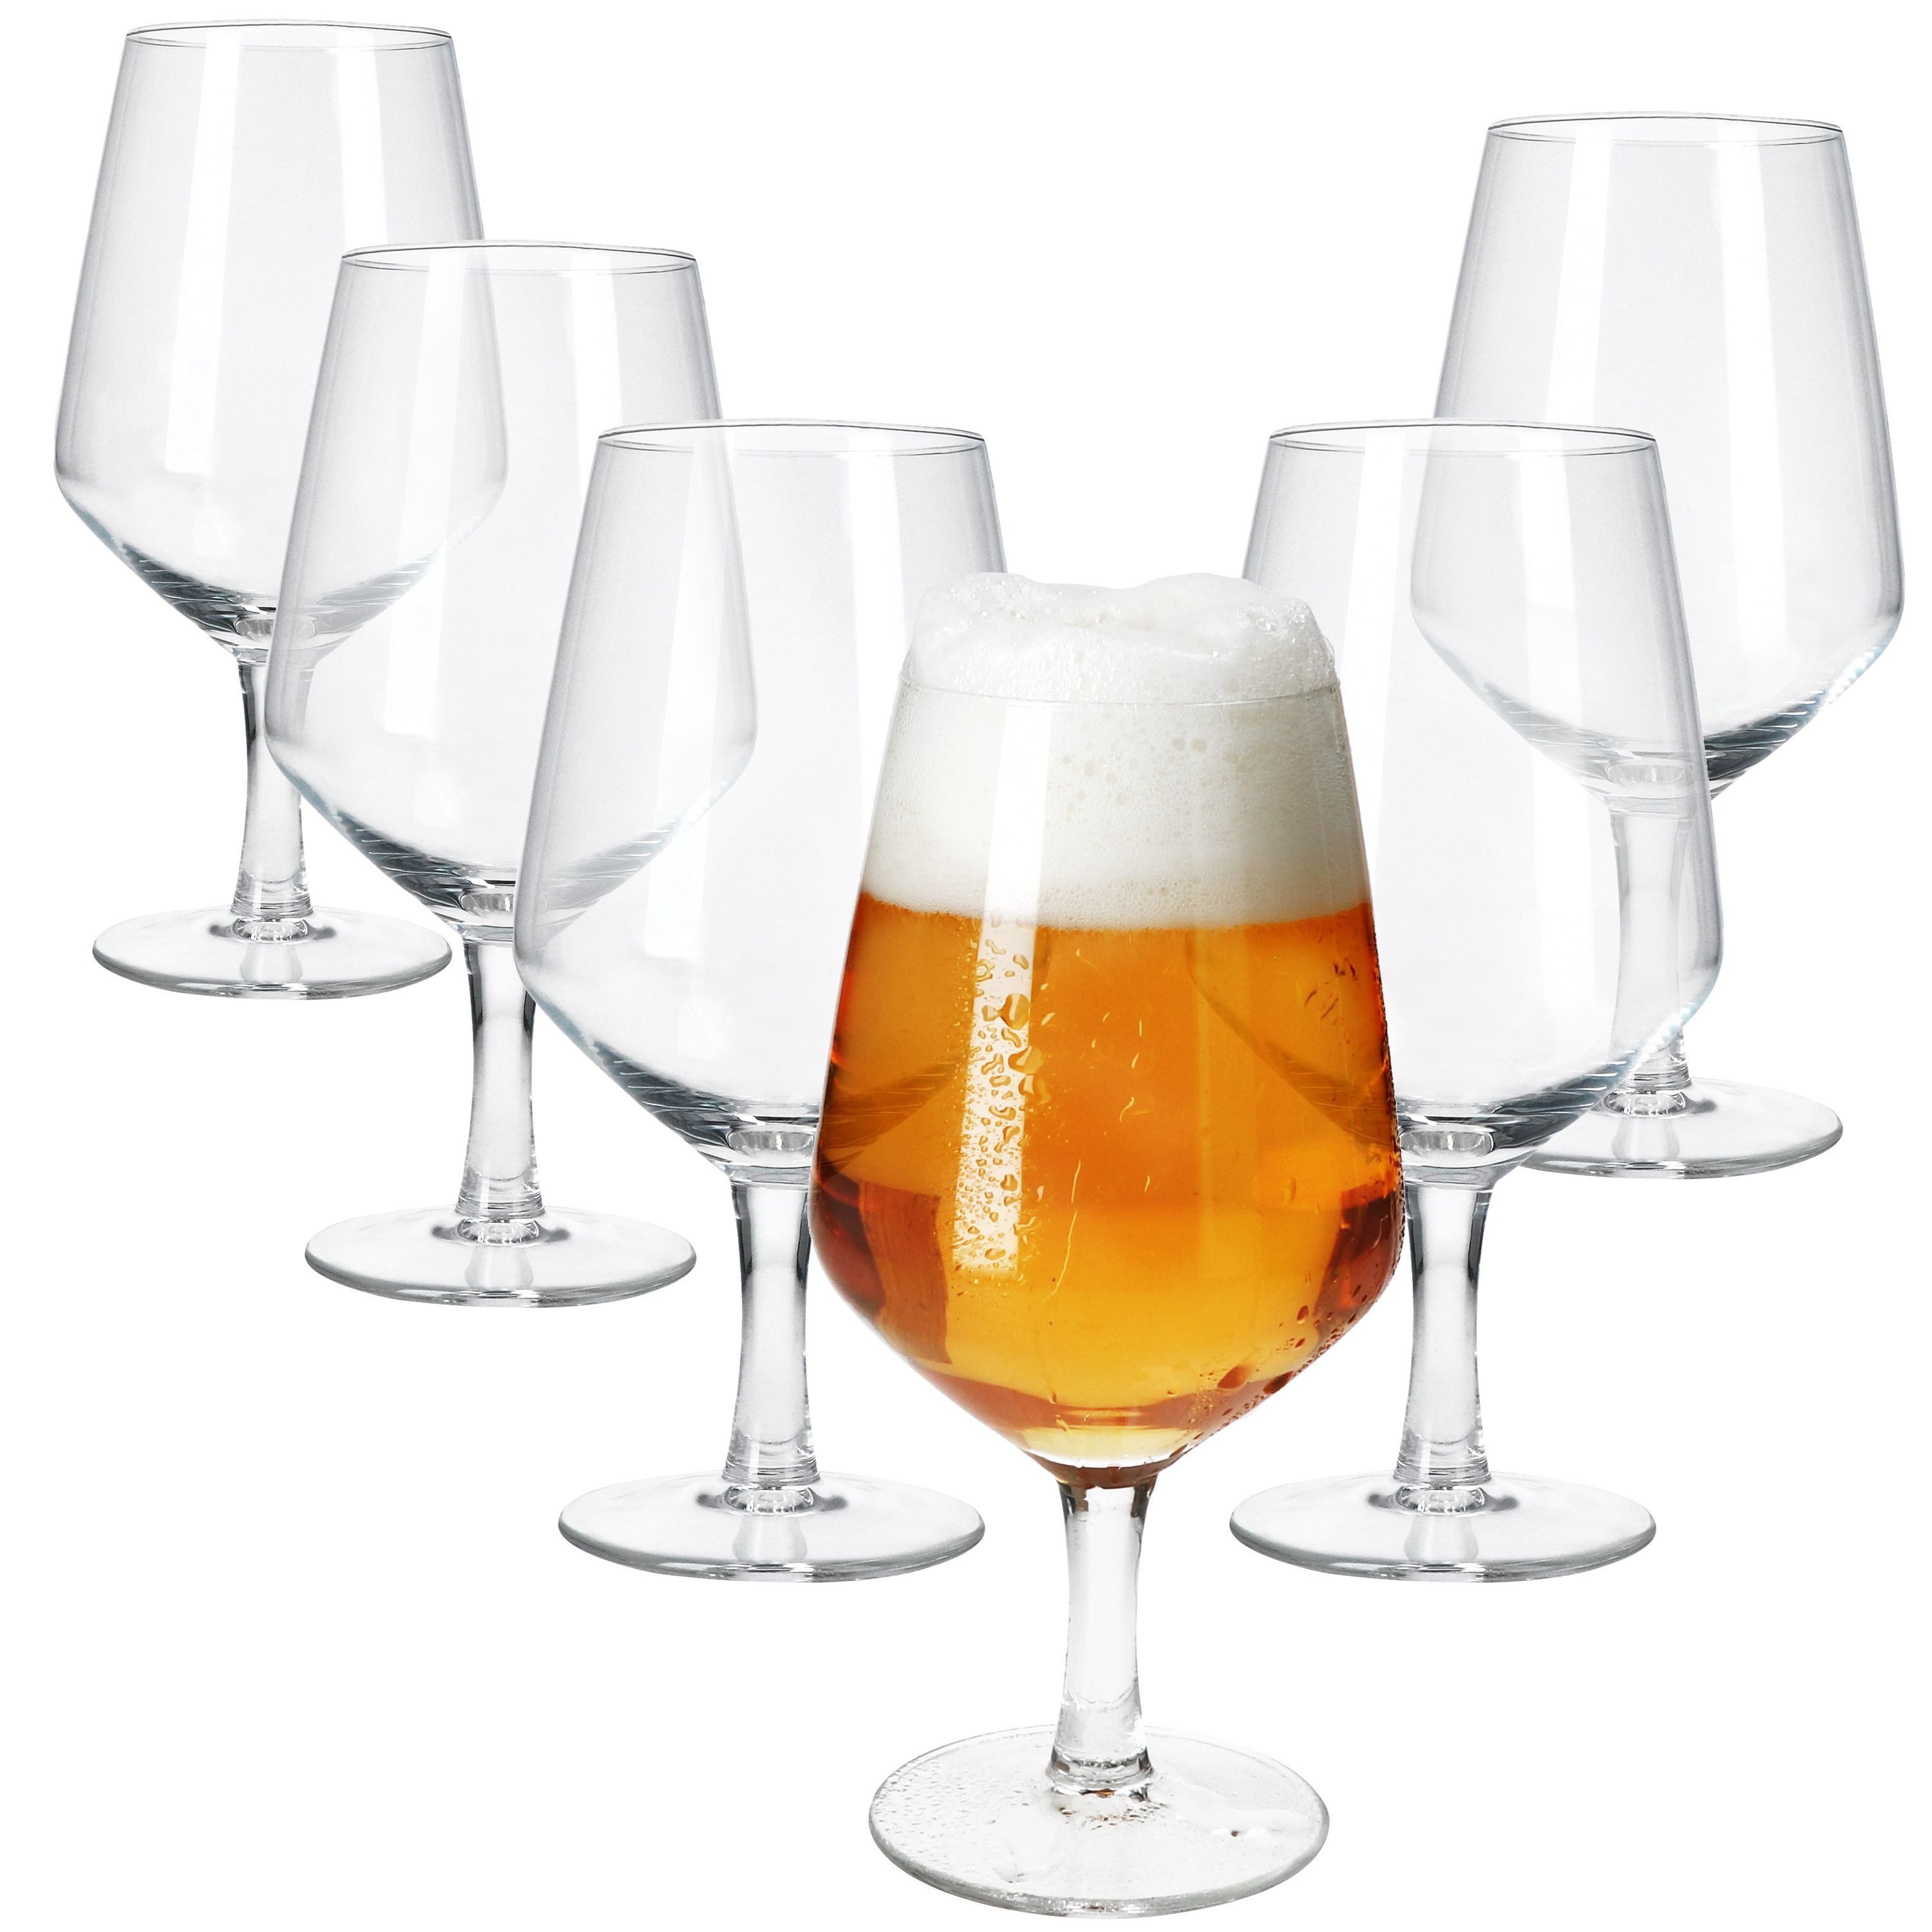 MamboCat Bierglas 6x Carré Bierglas 450ml Biergläser klar 0,35L Glas Bier-Kelch, Glas